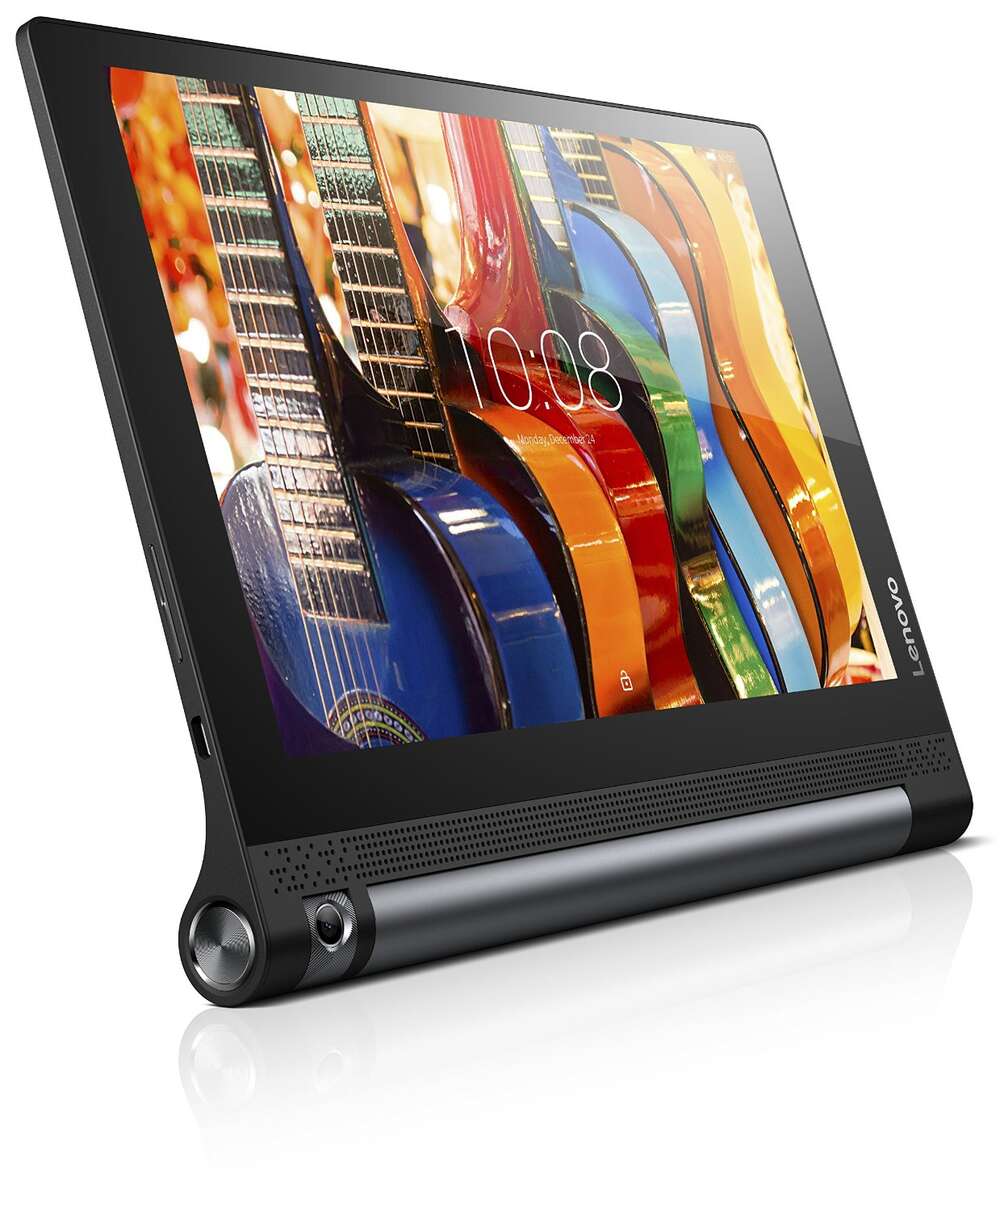 Uusi artikkeli: Lenovo Yoga Tab 3 – Tabletti kotiin ja matkalle